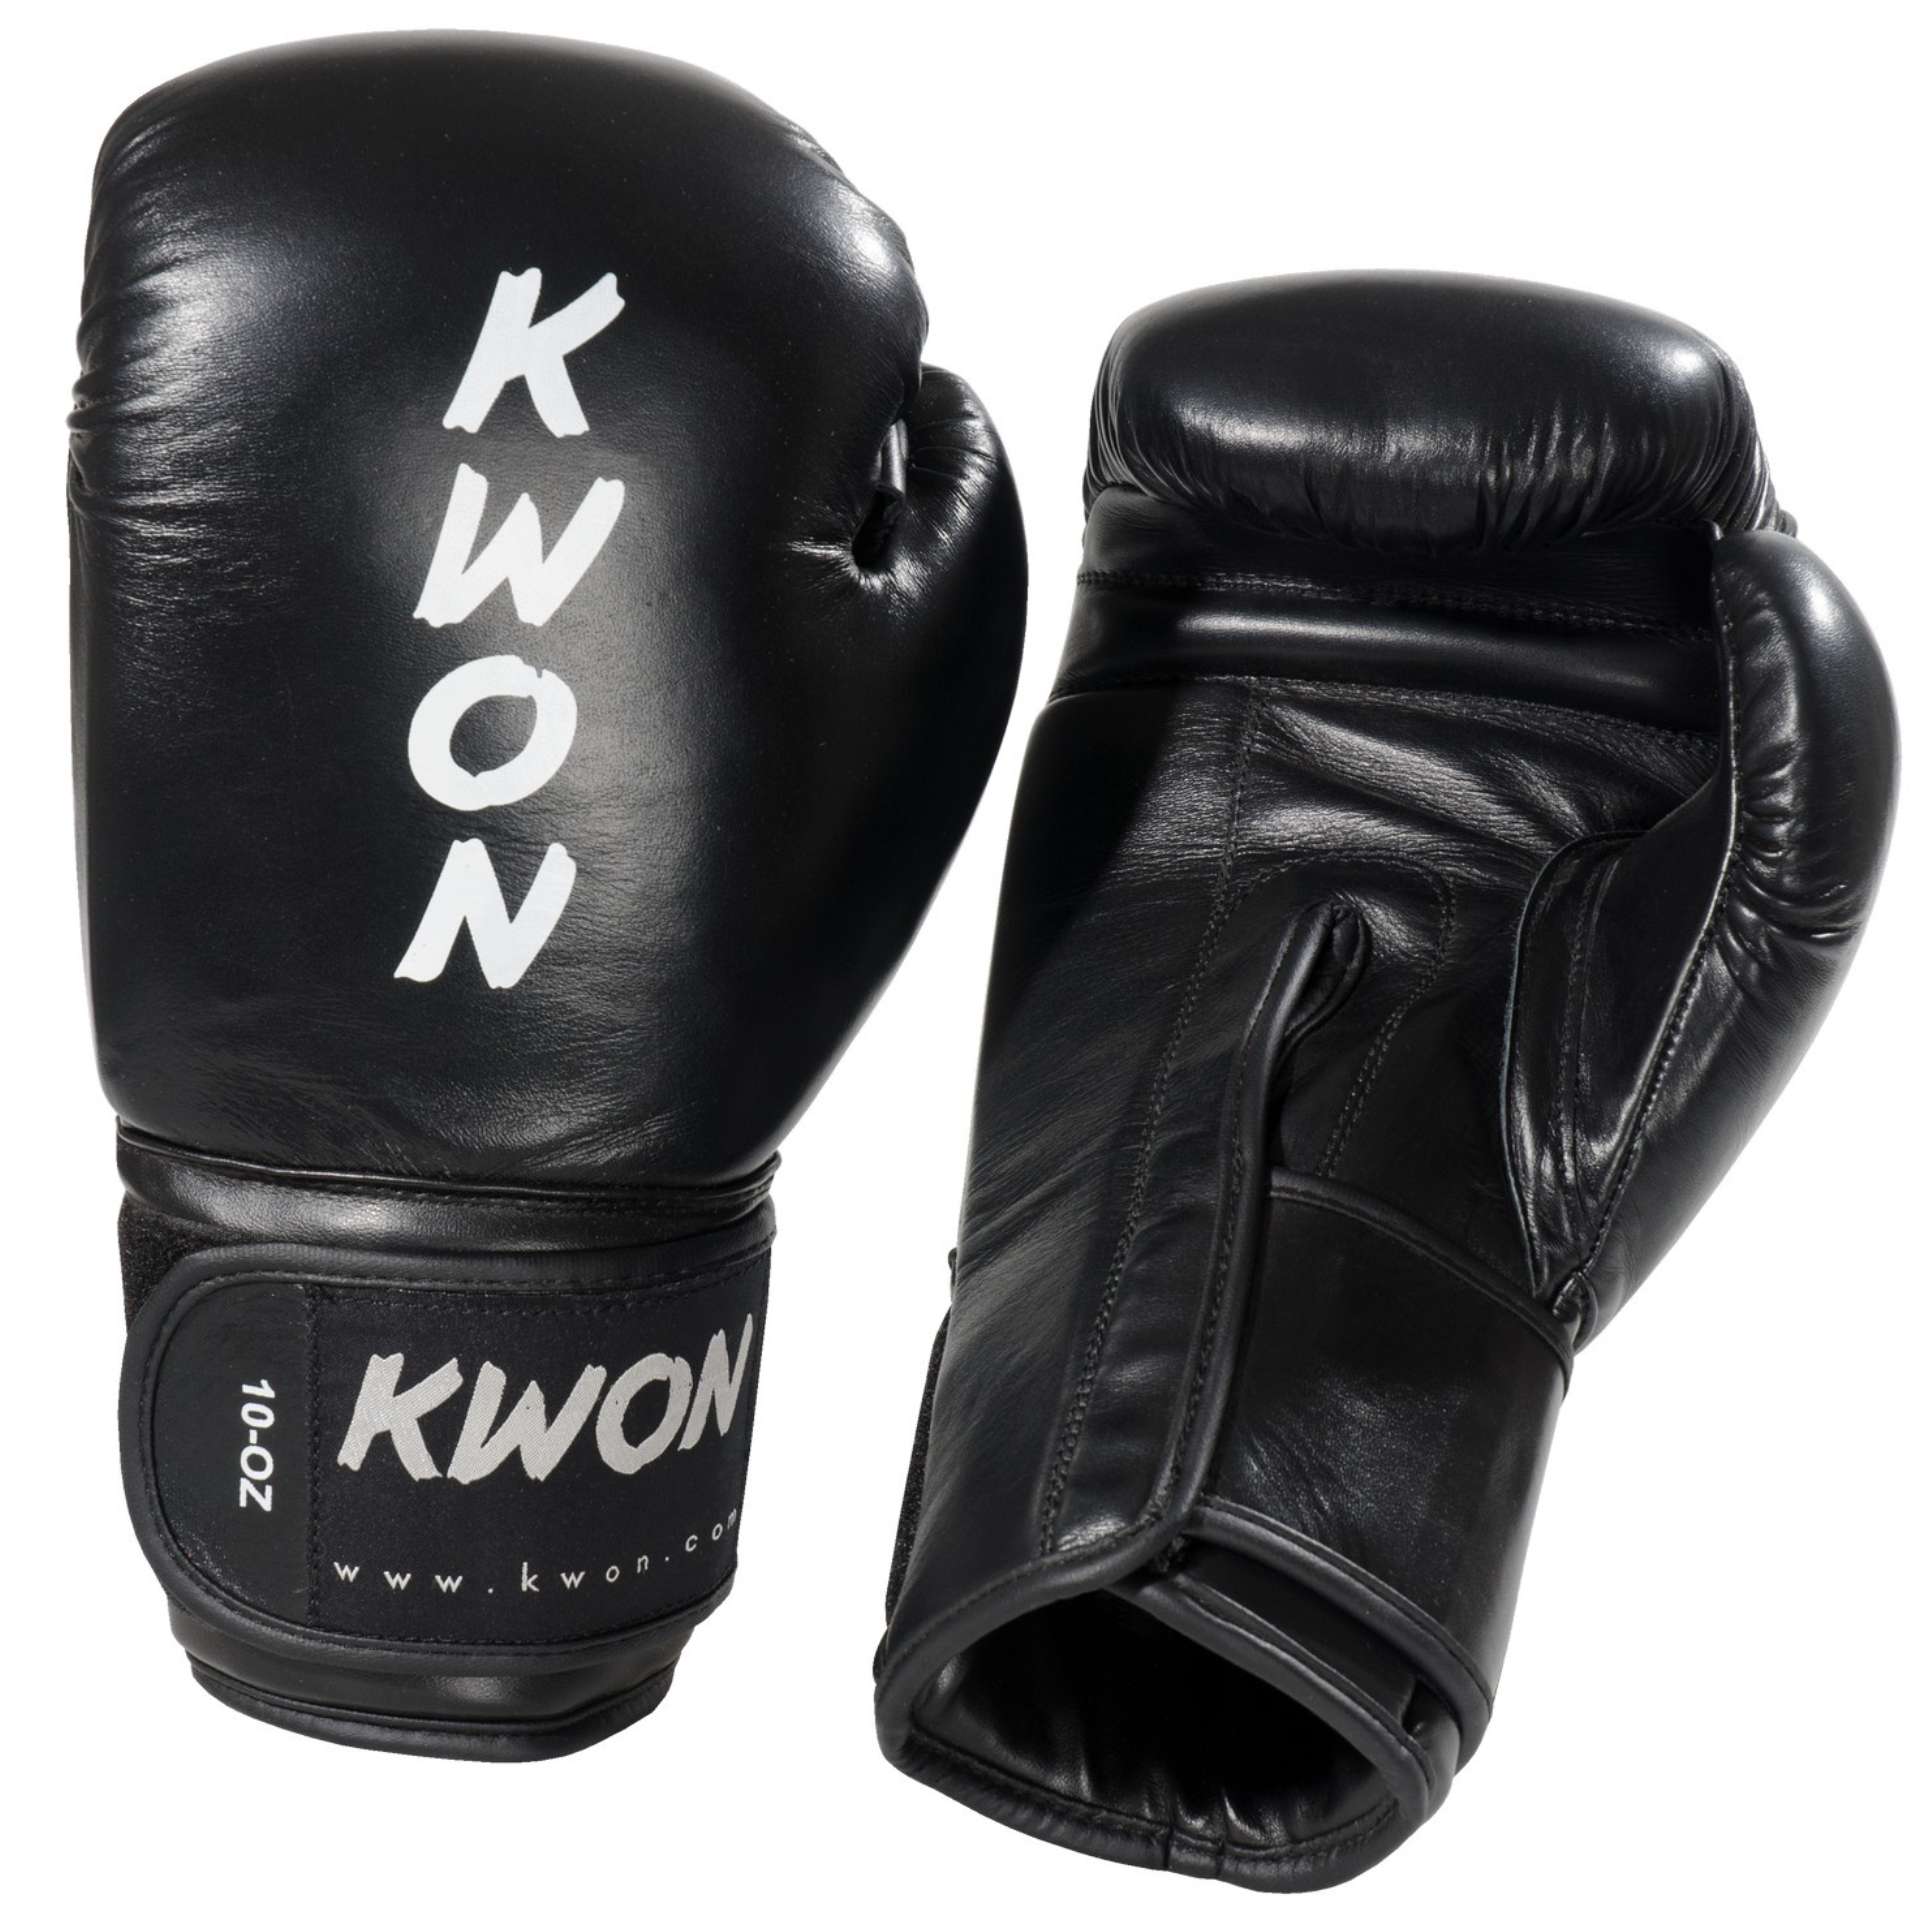 Boxhandschuhe Ergo Champ von Kwon